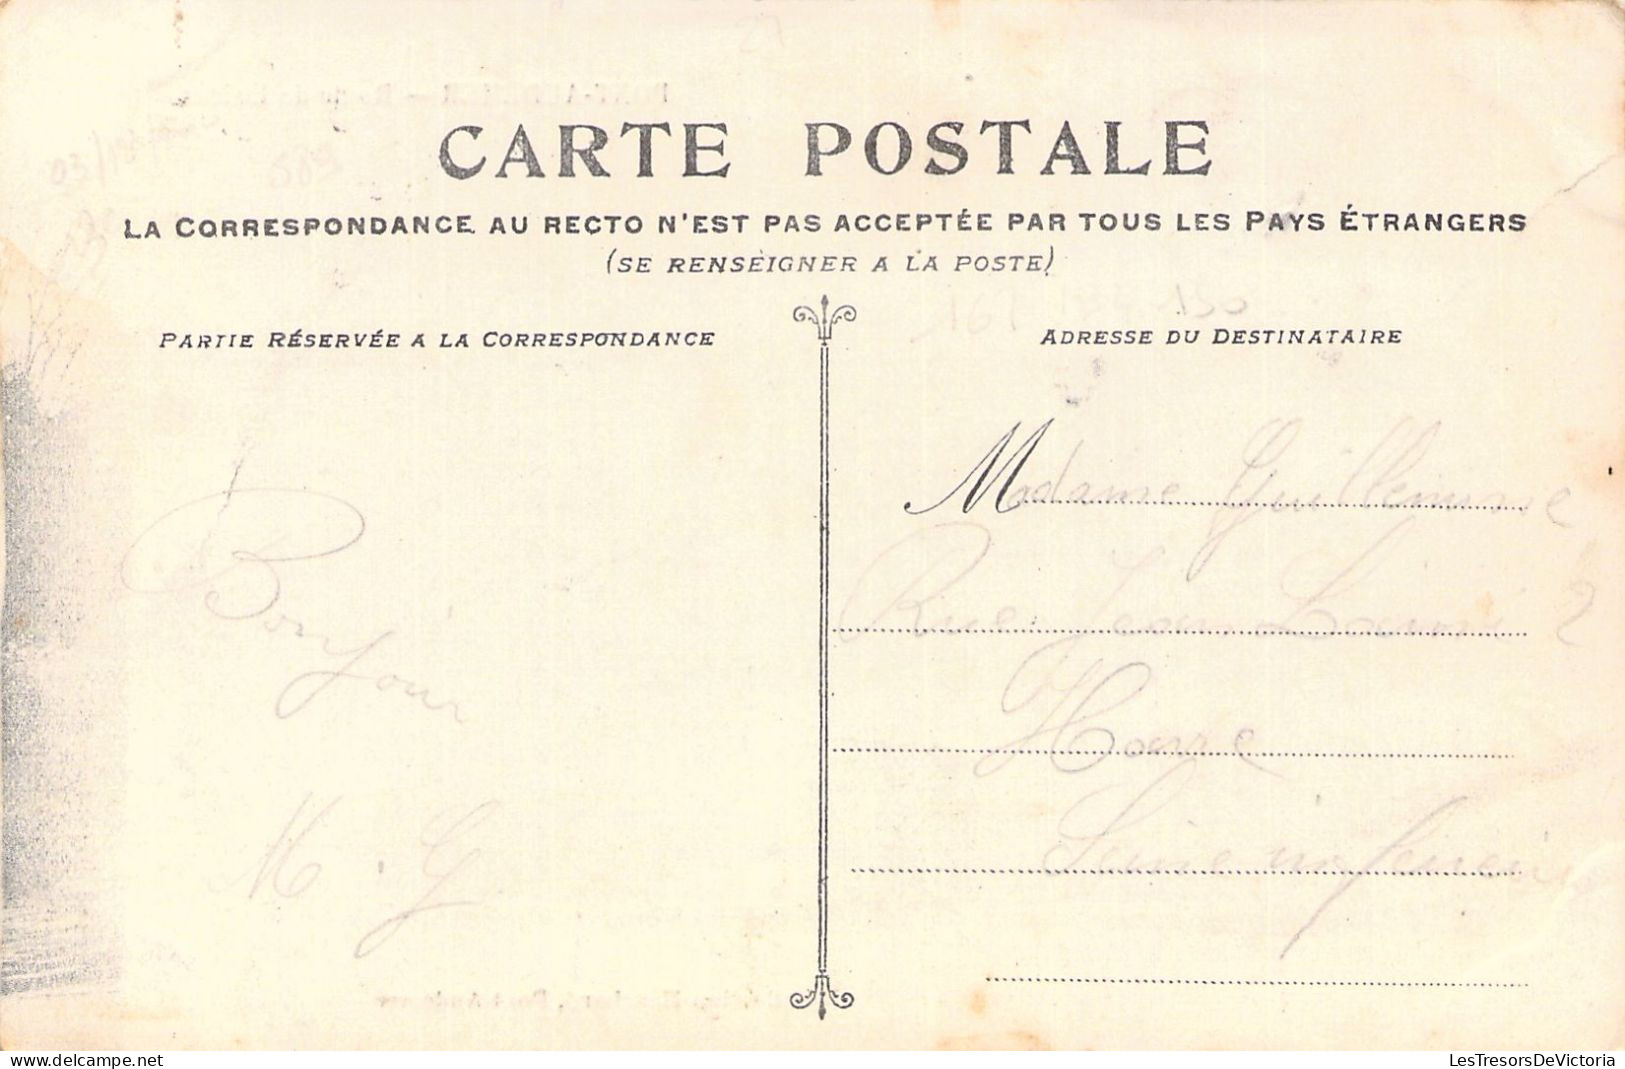 FRANCE - 27 - PONT AUDEMER - Route De Lisieux - Carte Postale Ancienne - Pont Audemer